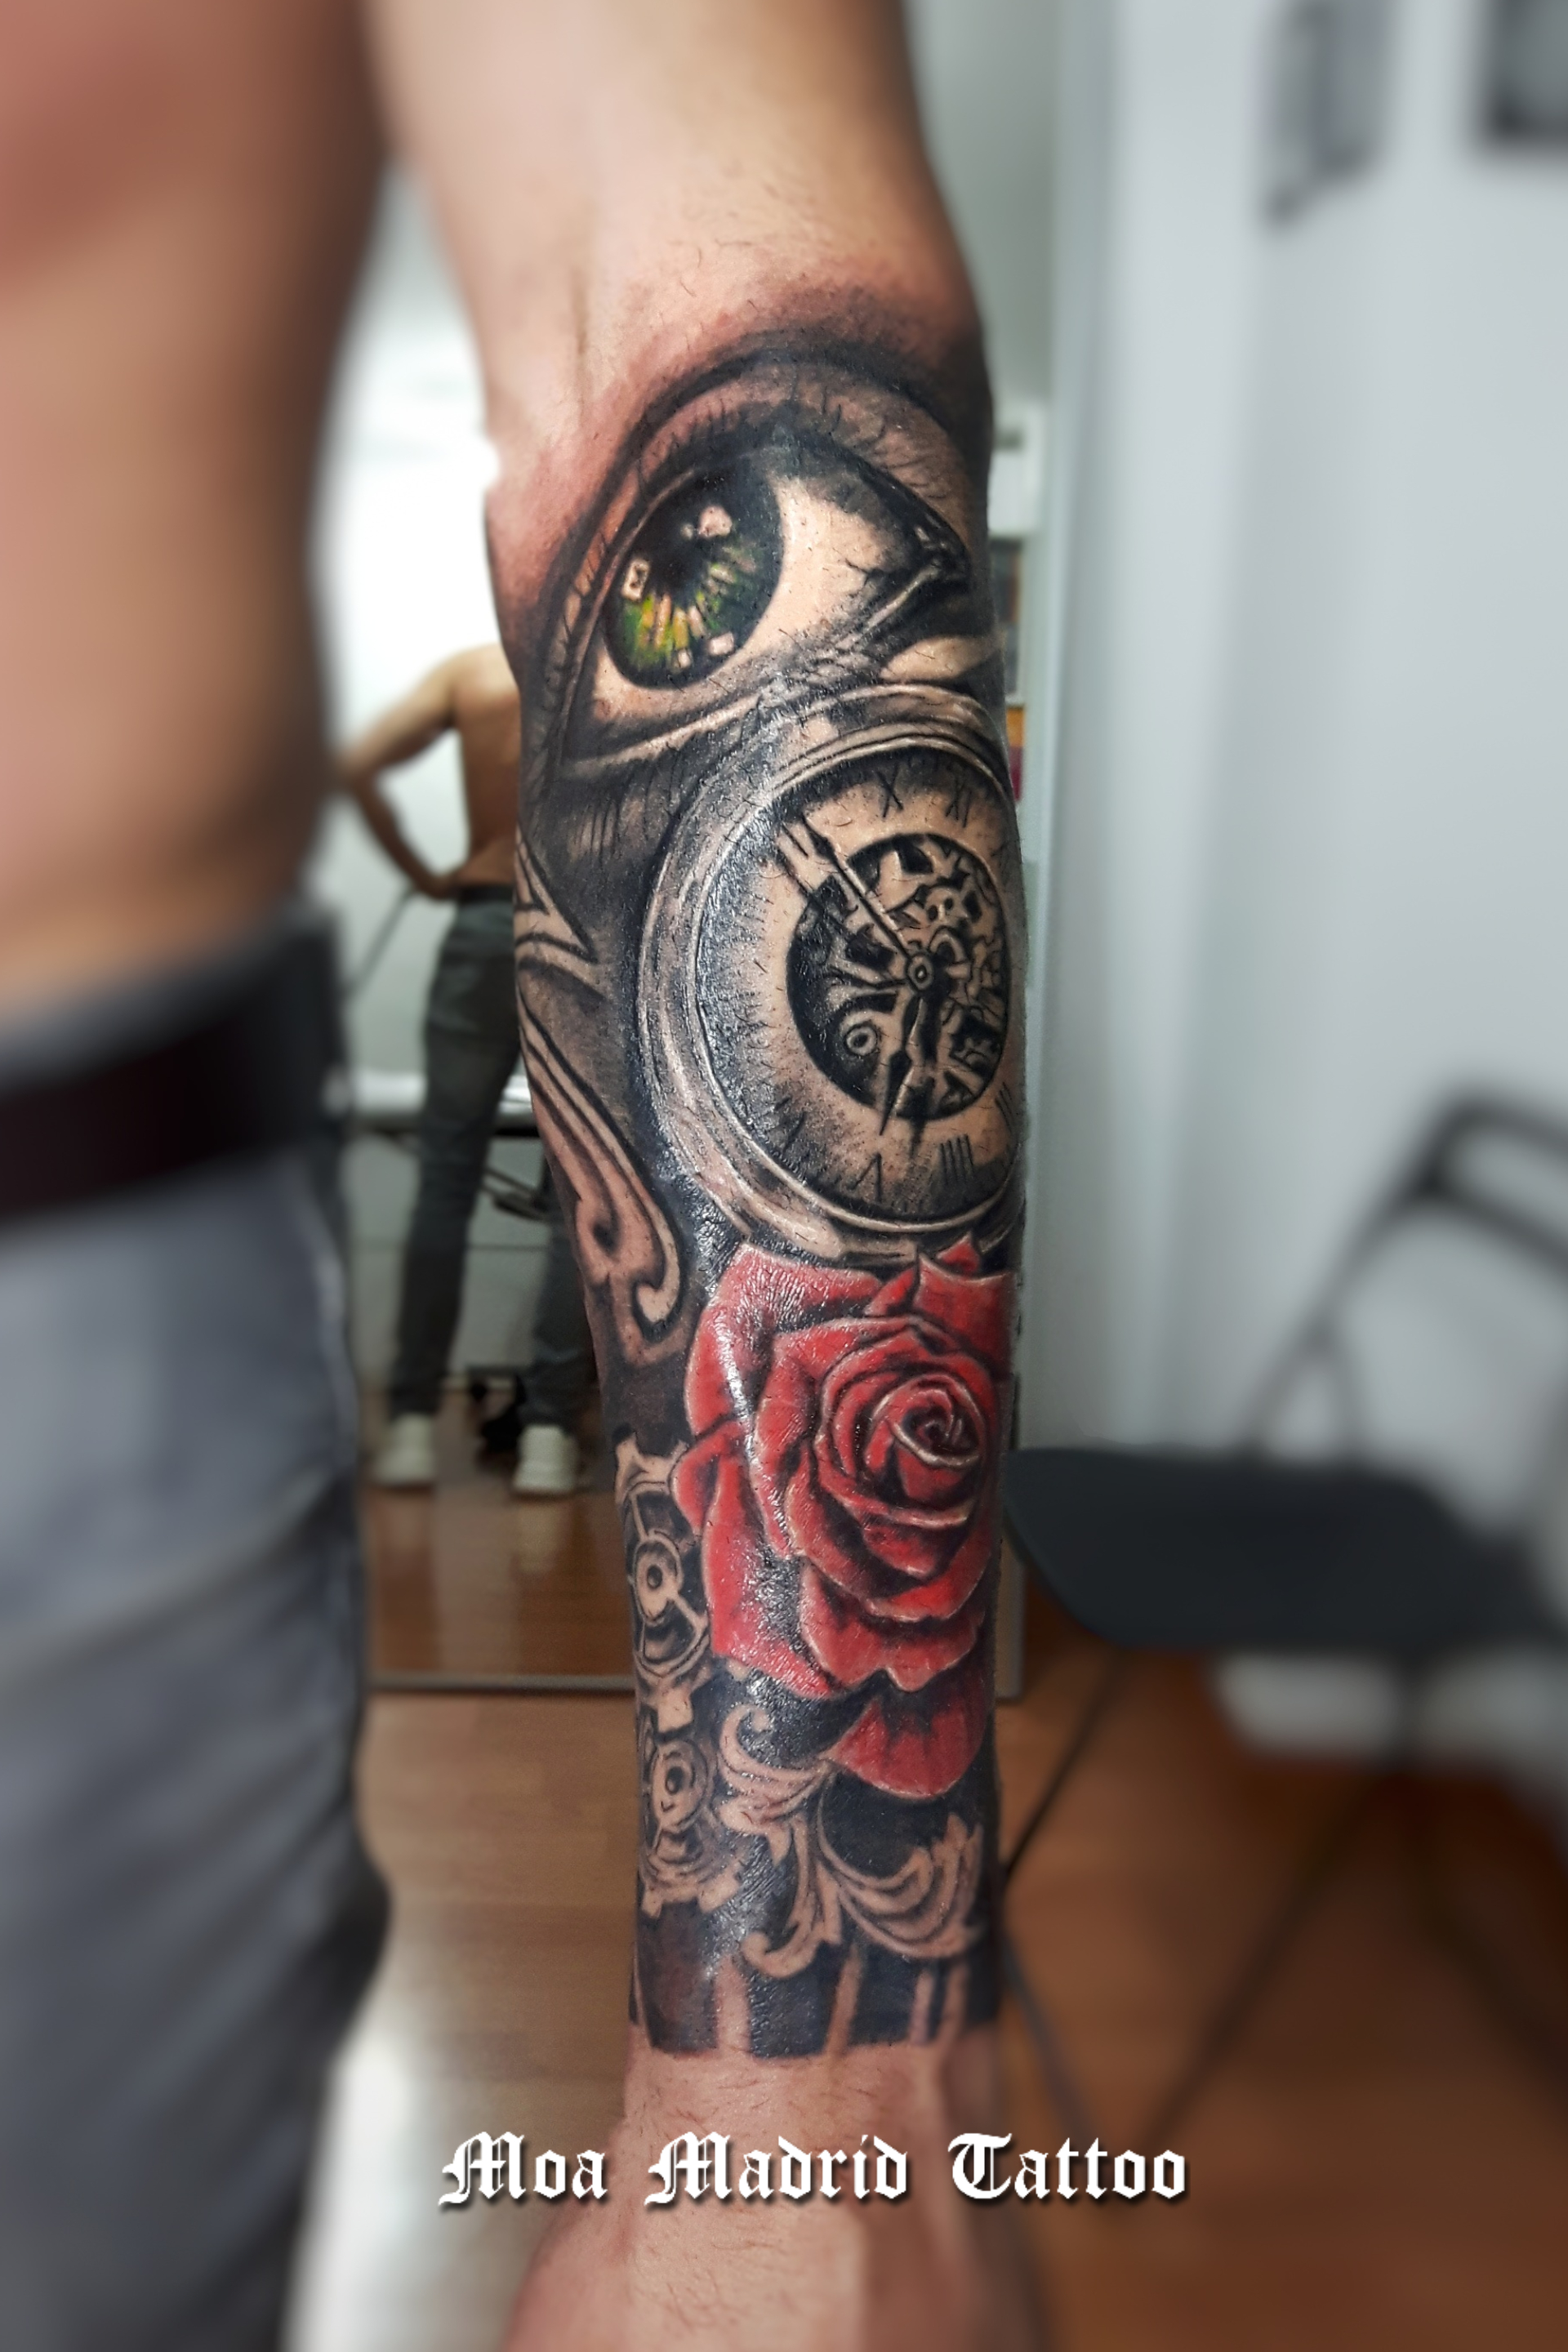 Un elegante tatuaje en realismo en blanco y negro y color, con un ojo, un reloj antiguo y una rosa